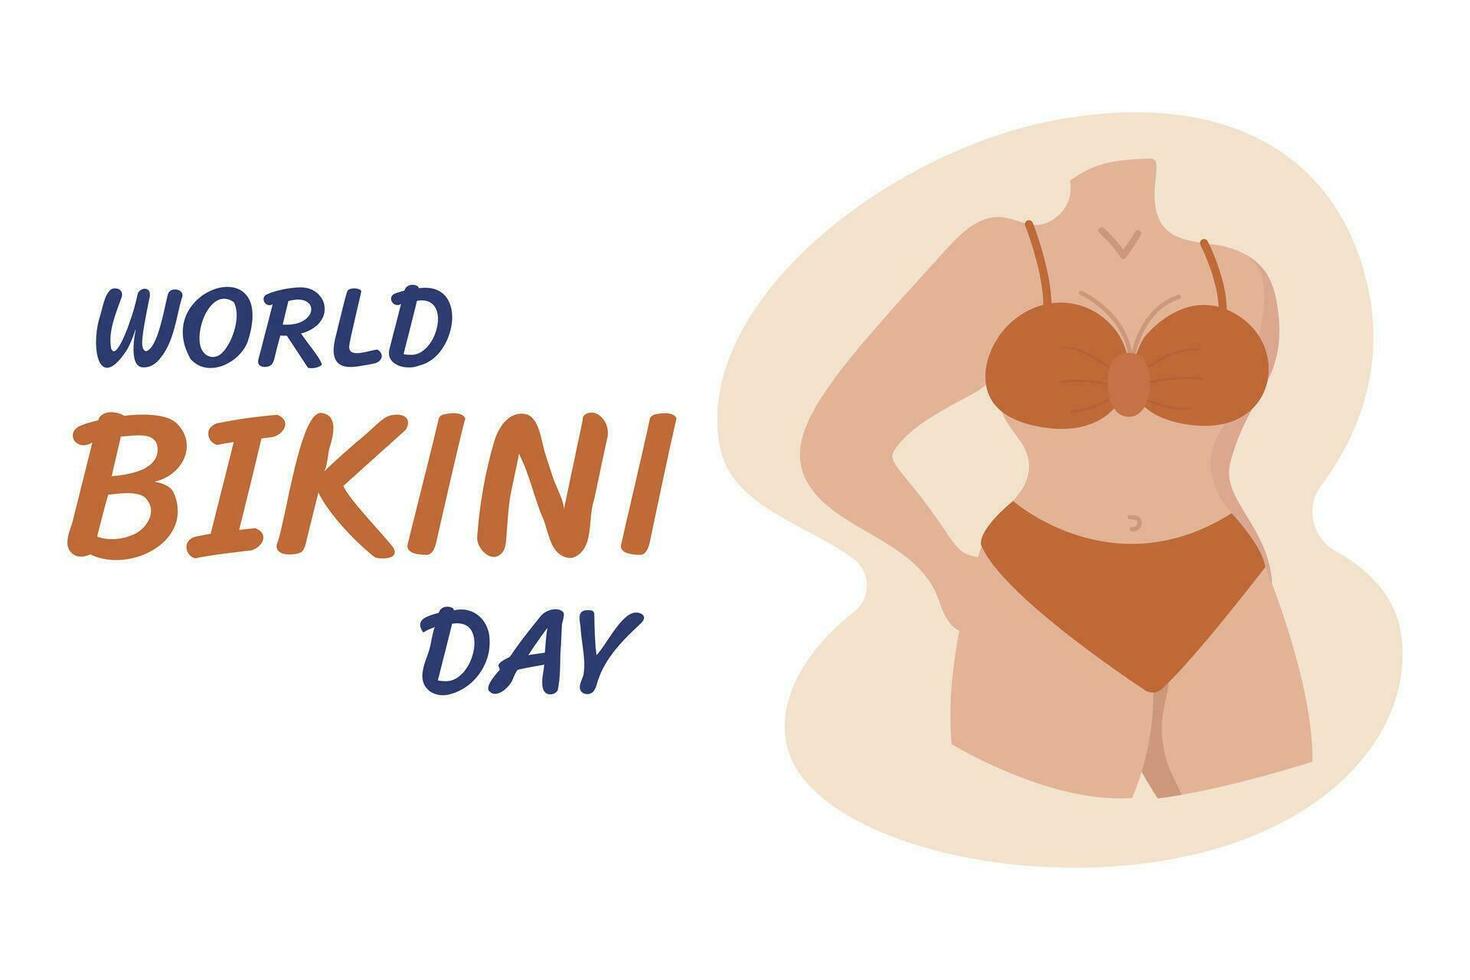 värld bikini dag. vektor illustration av en kvinna i bikini.